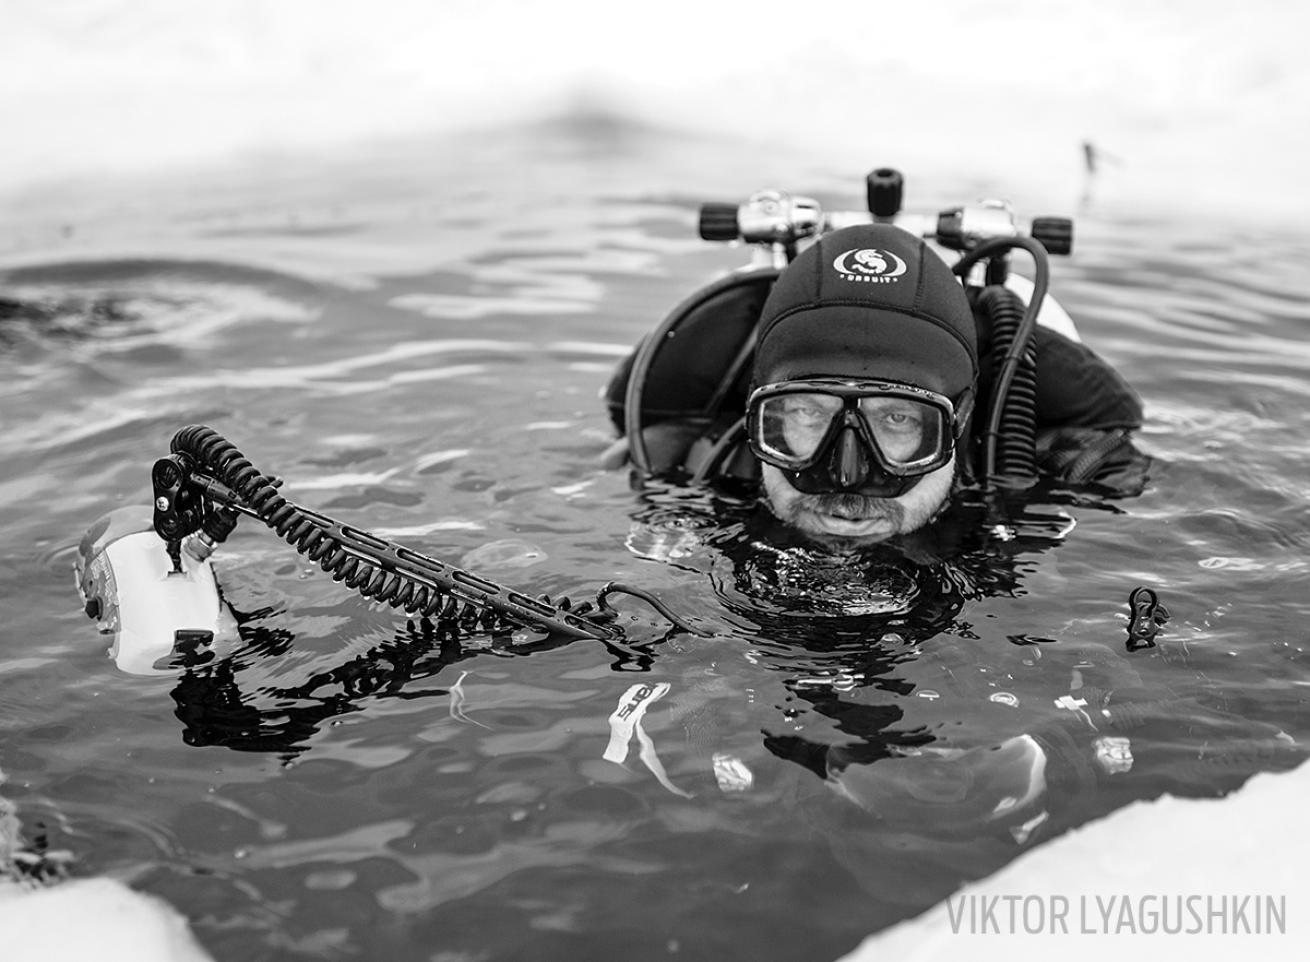 Viktor Lyagushkin underwater photographer